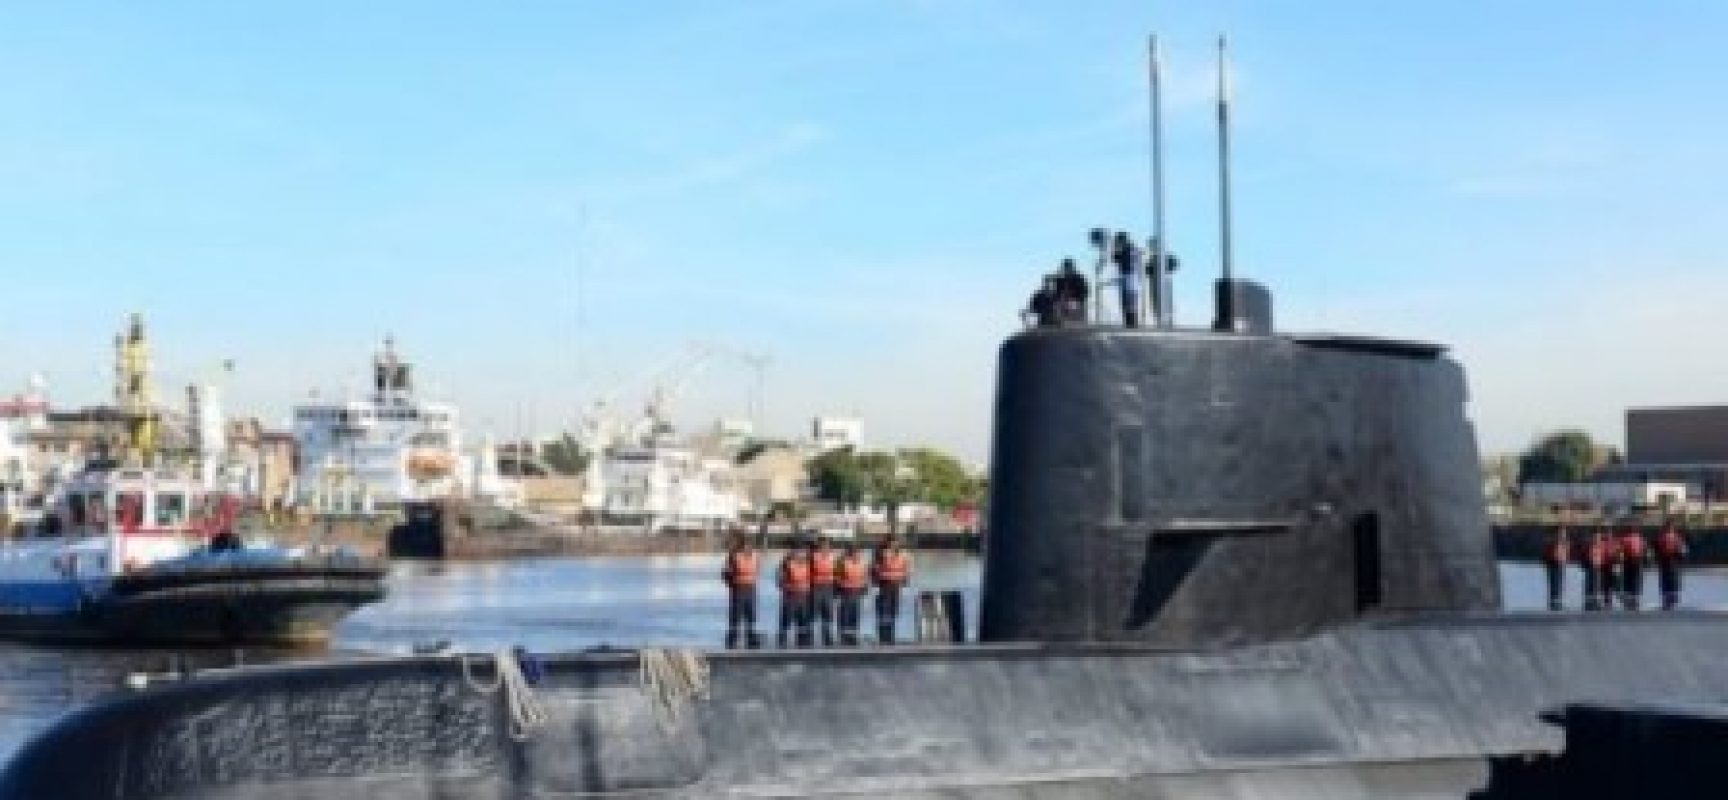 Marinha Argentina anuncia fim das buscas a sobreviventes do submarino militar desaparecido